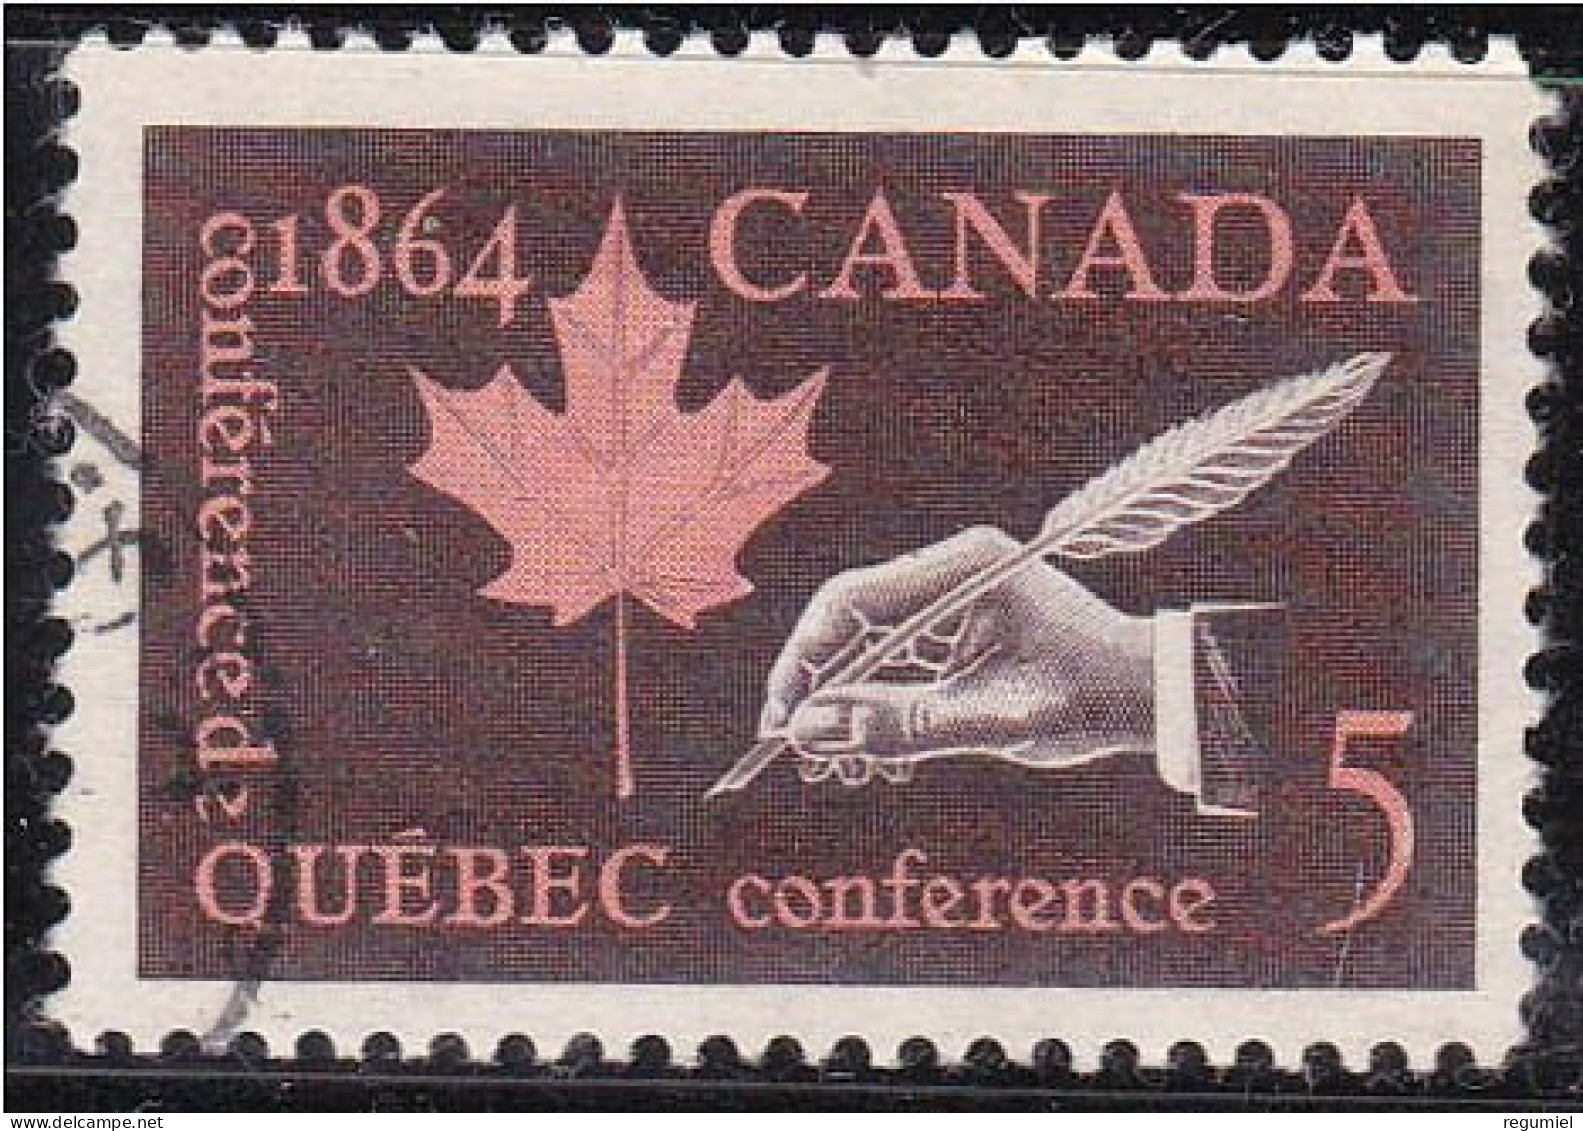 Canada U  357 (o) Usado. 1964 - Oblitérés